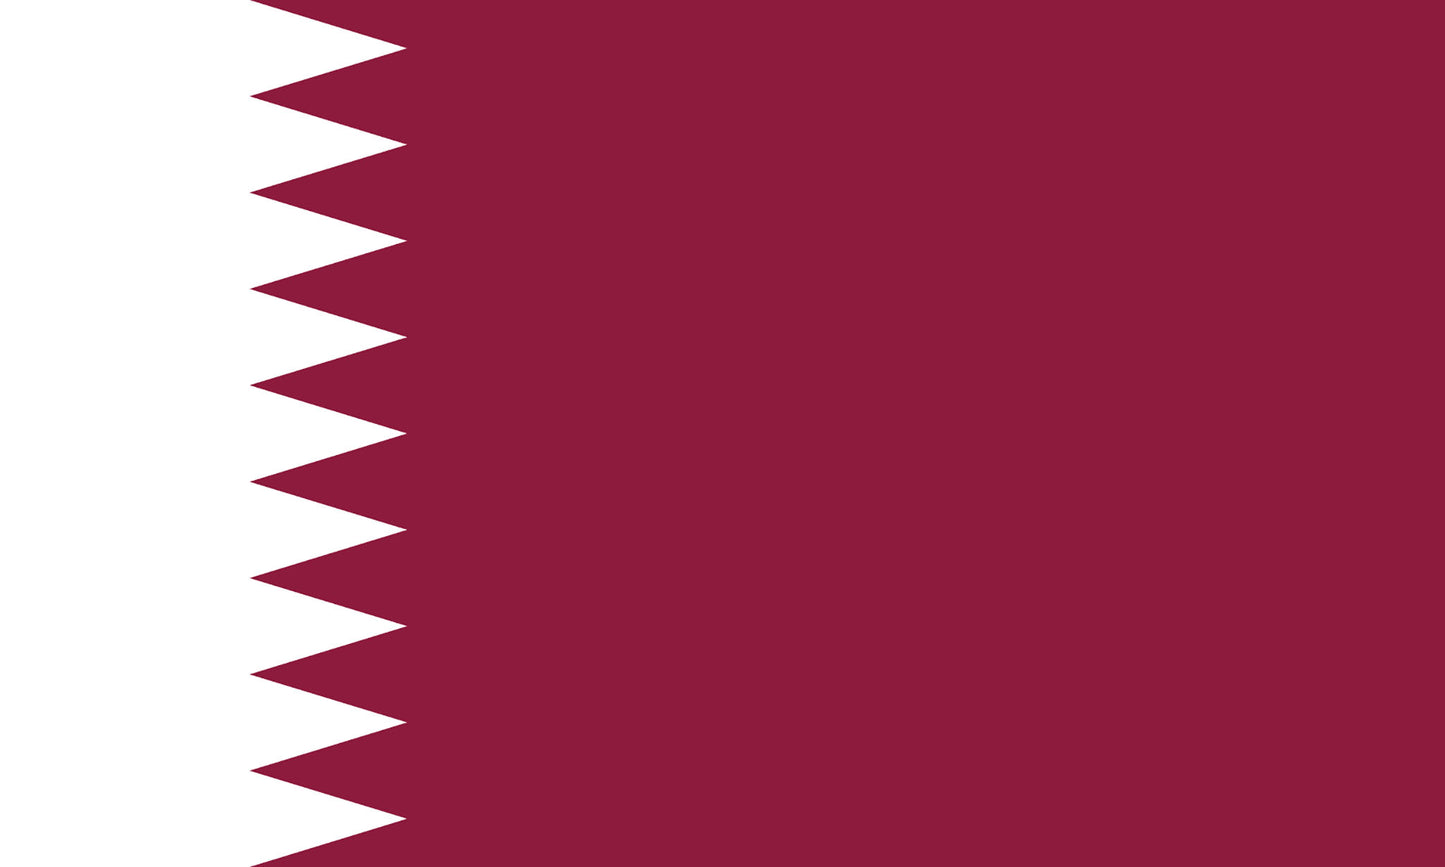 INR-QAT-15x22-2 - государственный флаг Катара, размер: 15х22 см, материал: атлас. Печать с двух сторон. Подставка и шток приобретаются отдельно